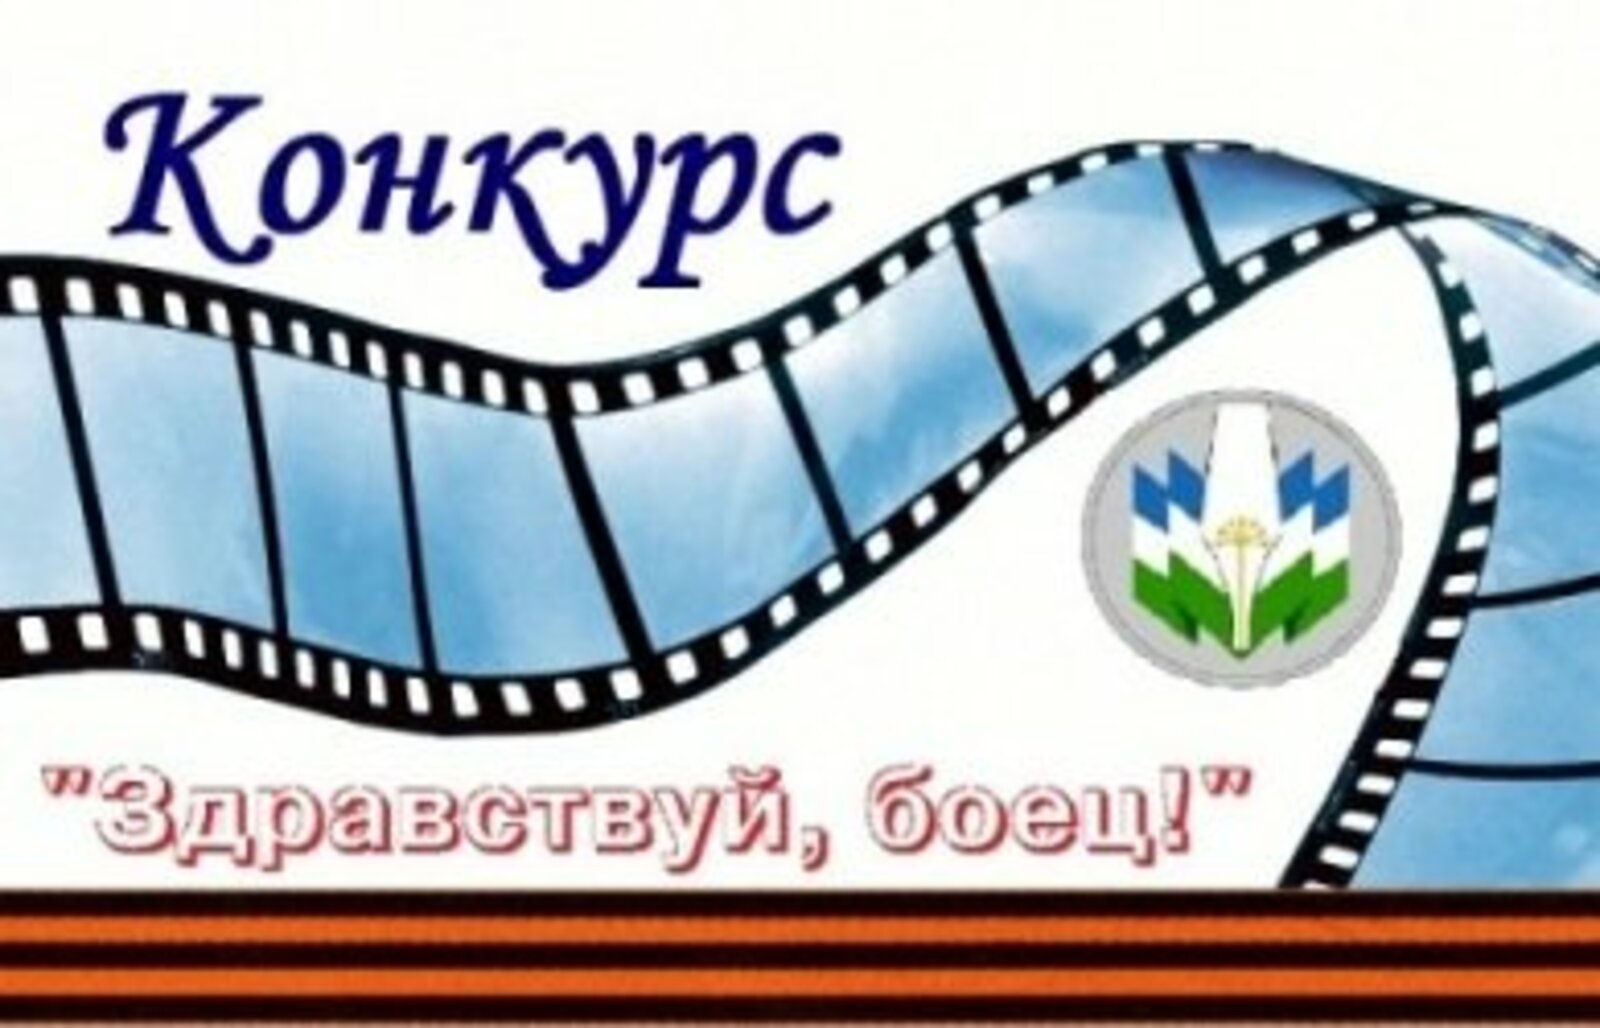 Союз журналистов Башкирии проводит конкурс видео «Здравствуй, боец!»